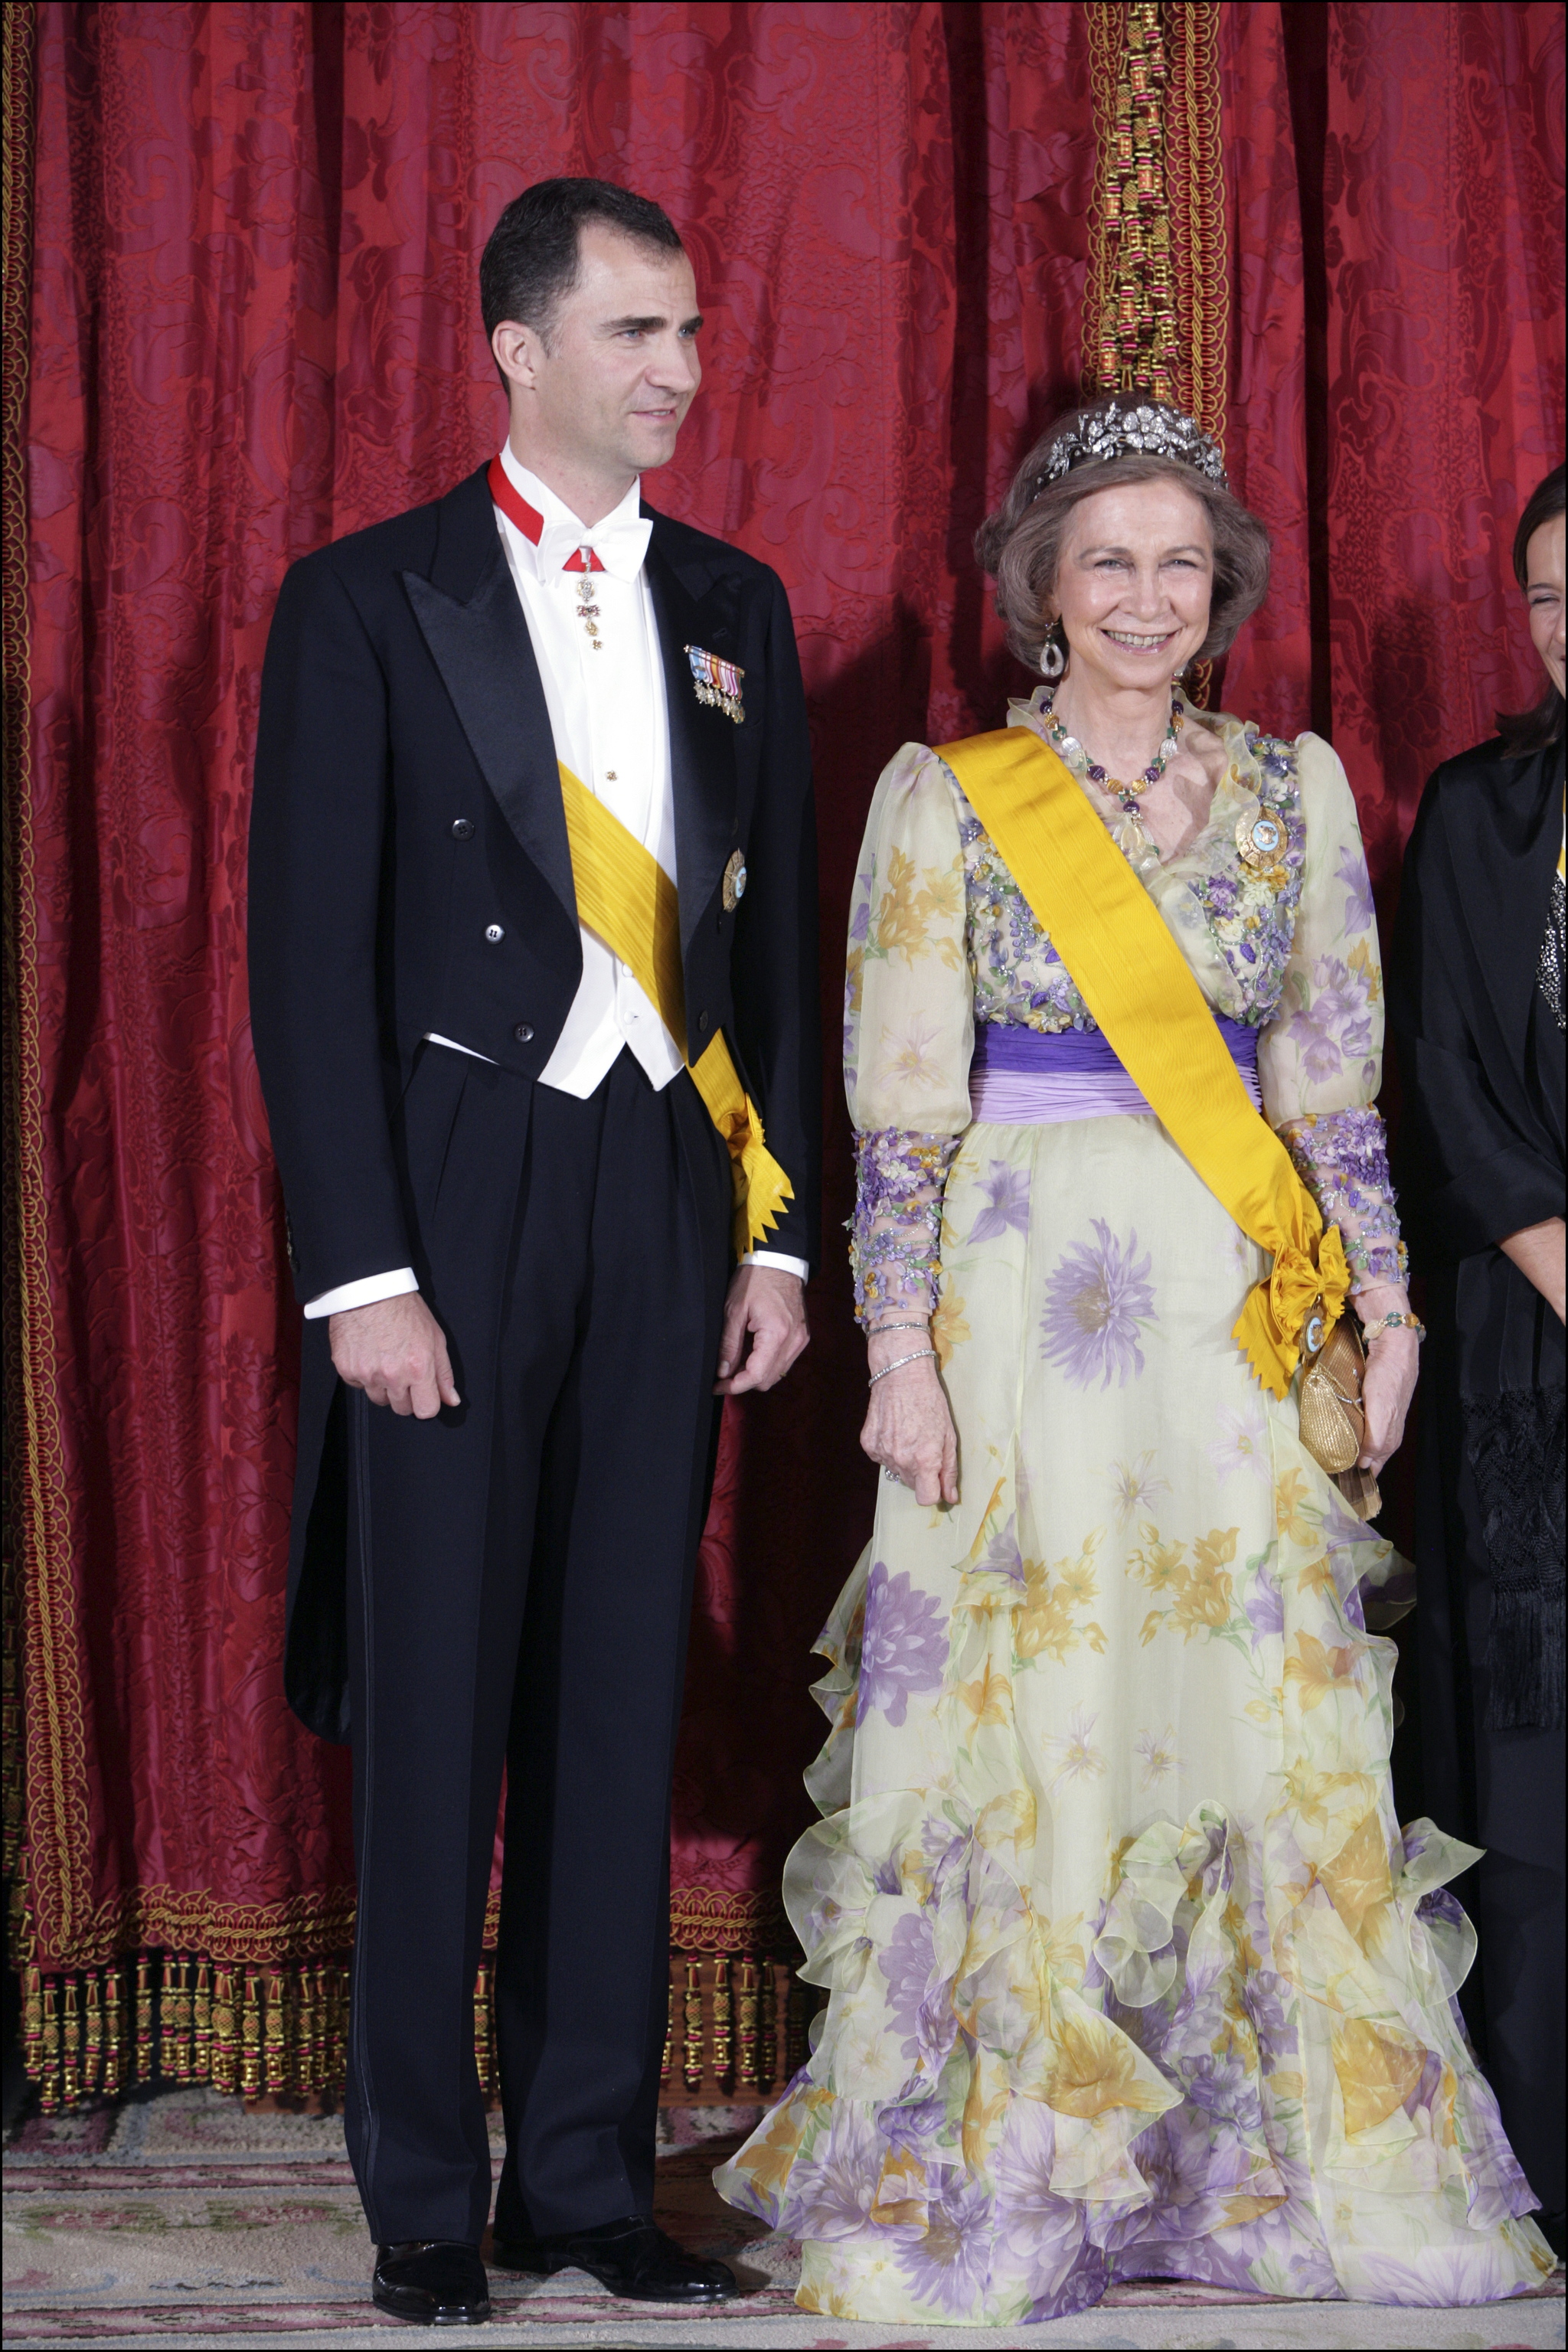 El espectacular vestido largo de flores de la reina Sofía de Grecia.